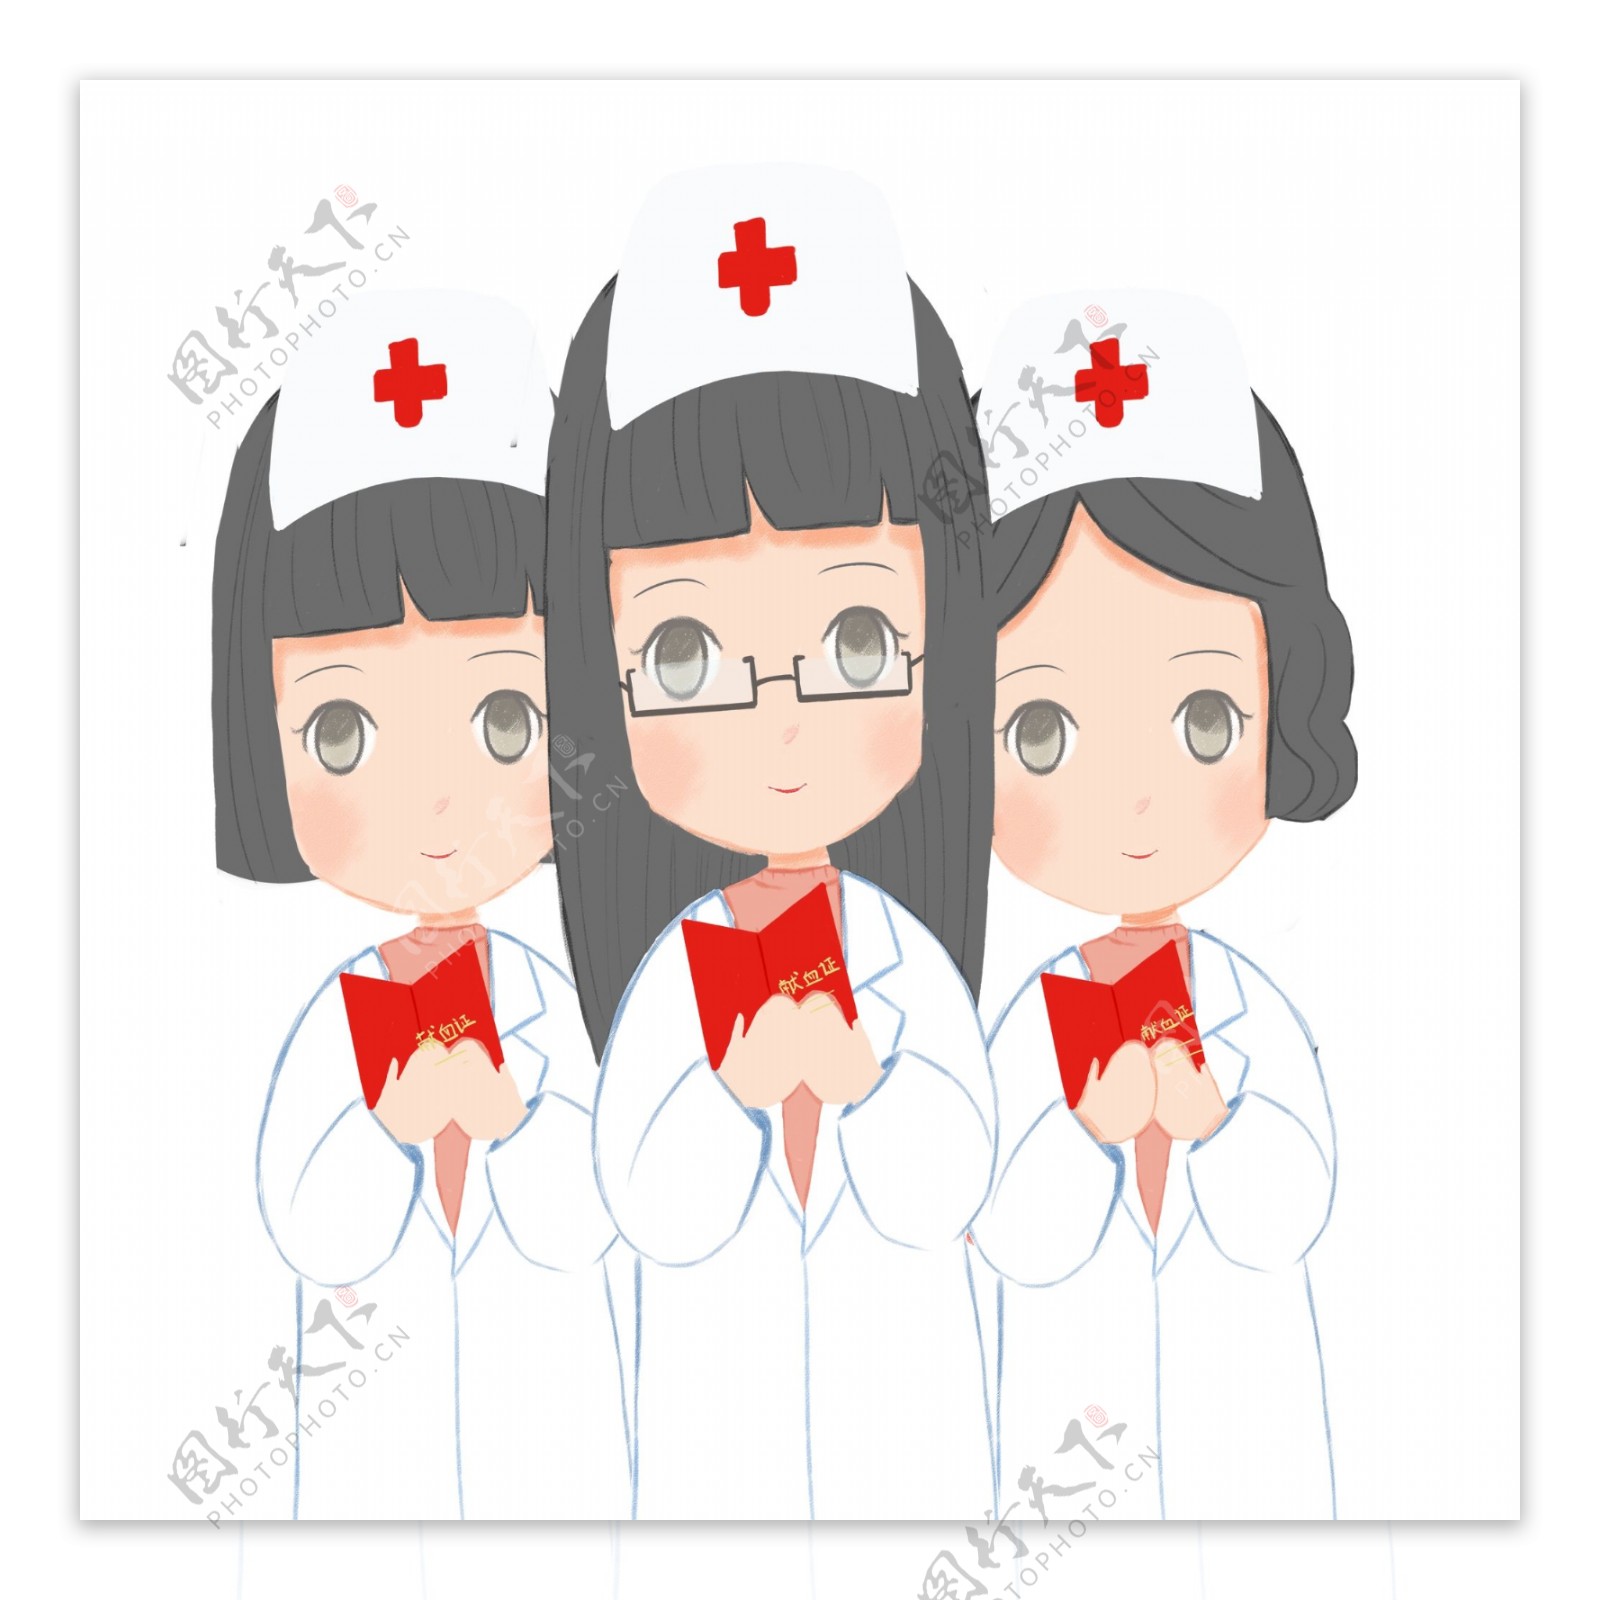 卡通可爱献血的女孩人物插画